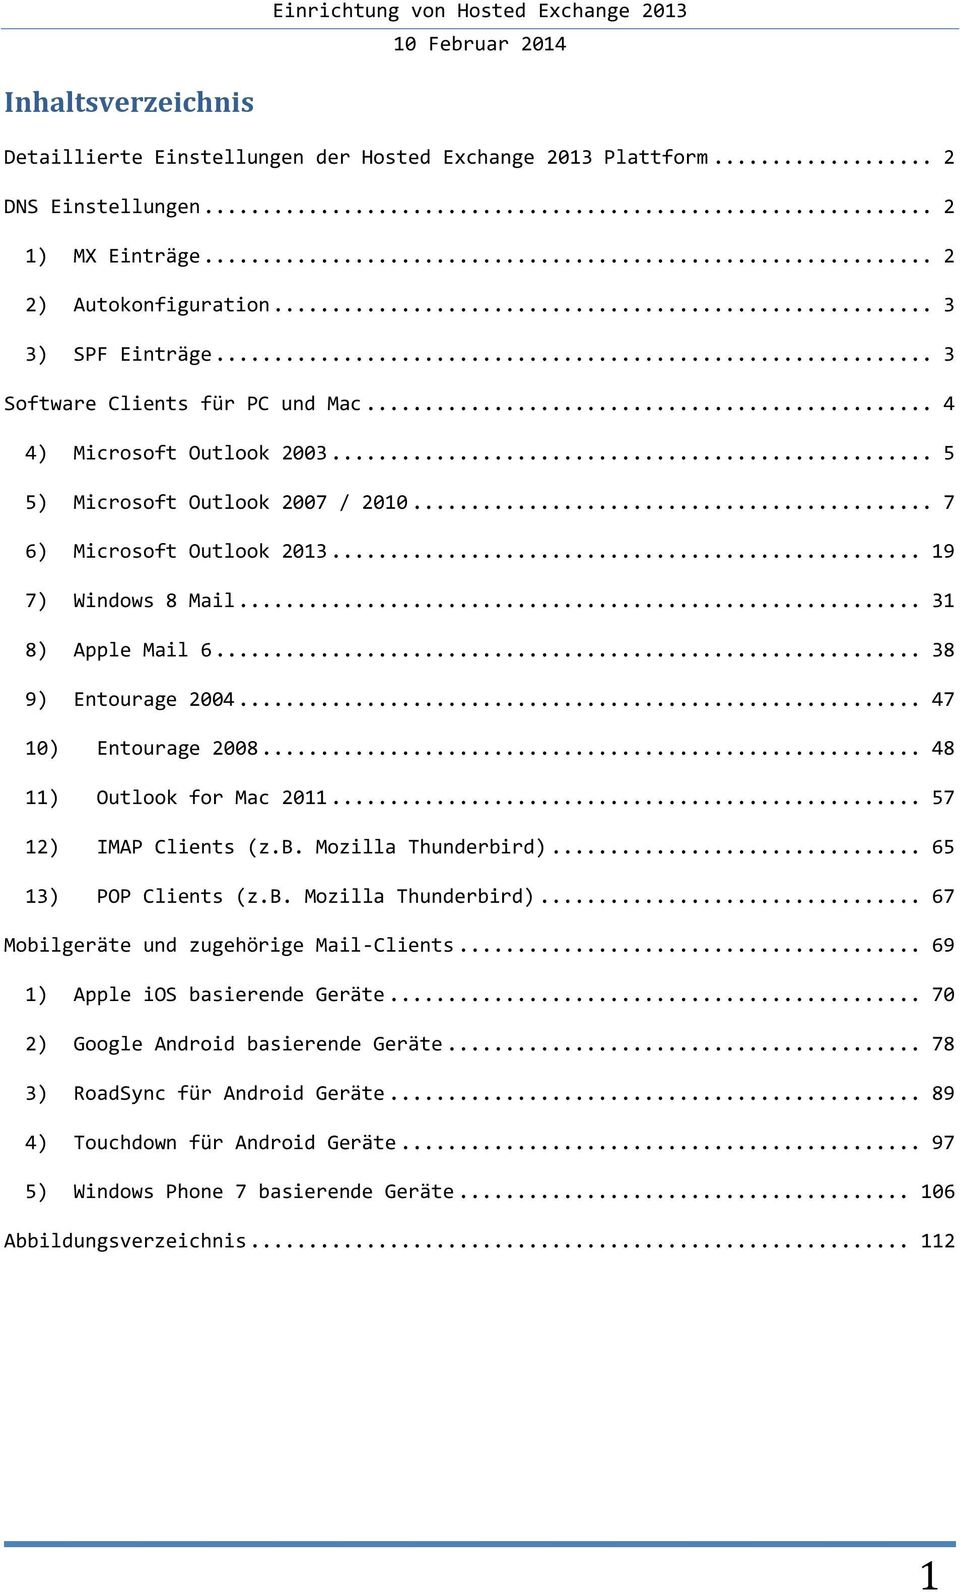 .. 38 9) Entourage 2004... 47 10) Entourage 2008... 48 11) Outlook for Mac 2011... 57 12) IMAP Clients (z.b. Mozilla Thunderbird)... 65 13) POP Clients (z.b. Mozilla Thunderbird)... 67 Mobilgeräte und zugehörige Mail-Clients.